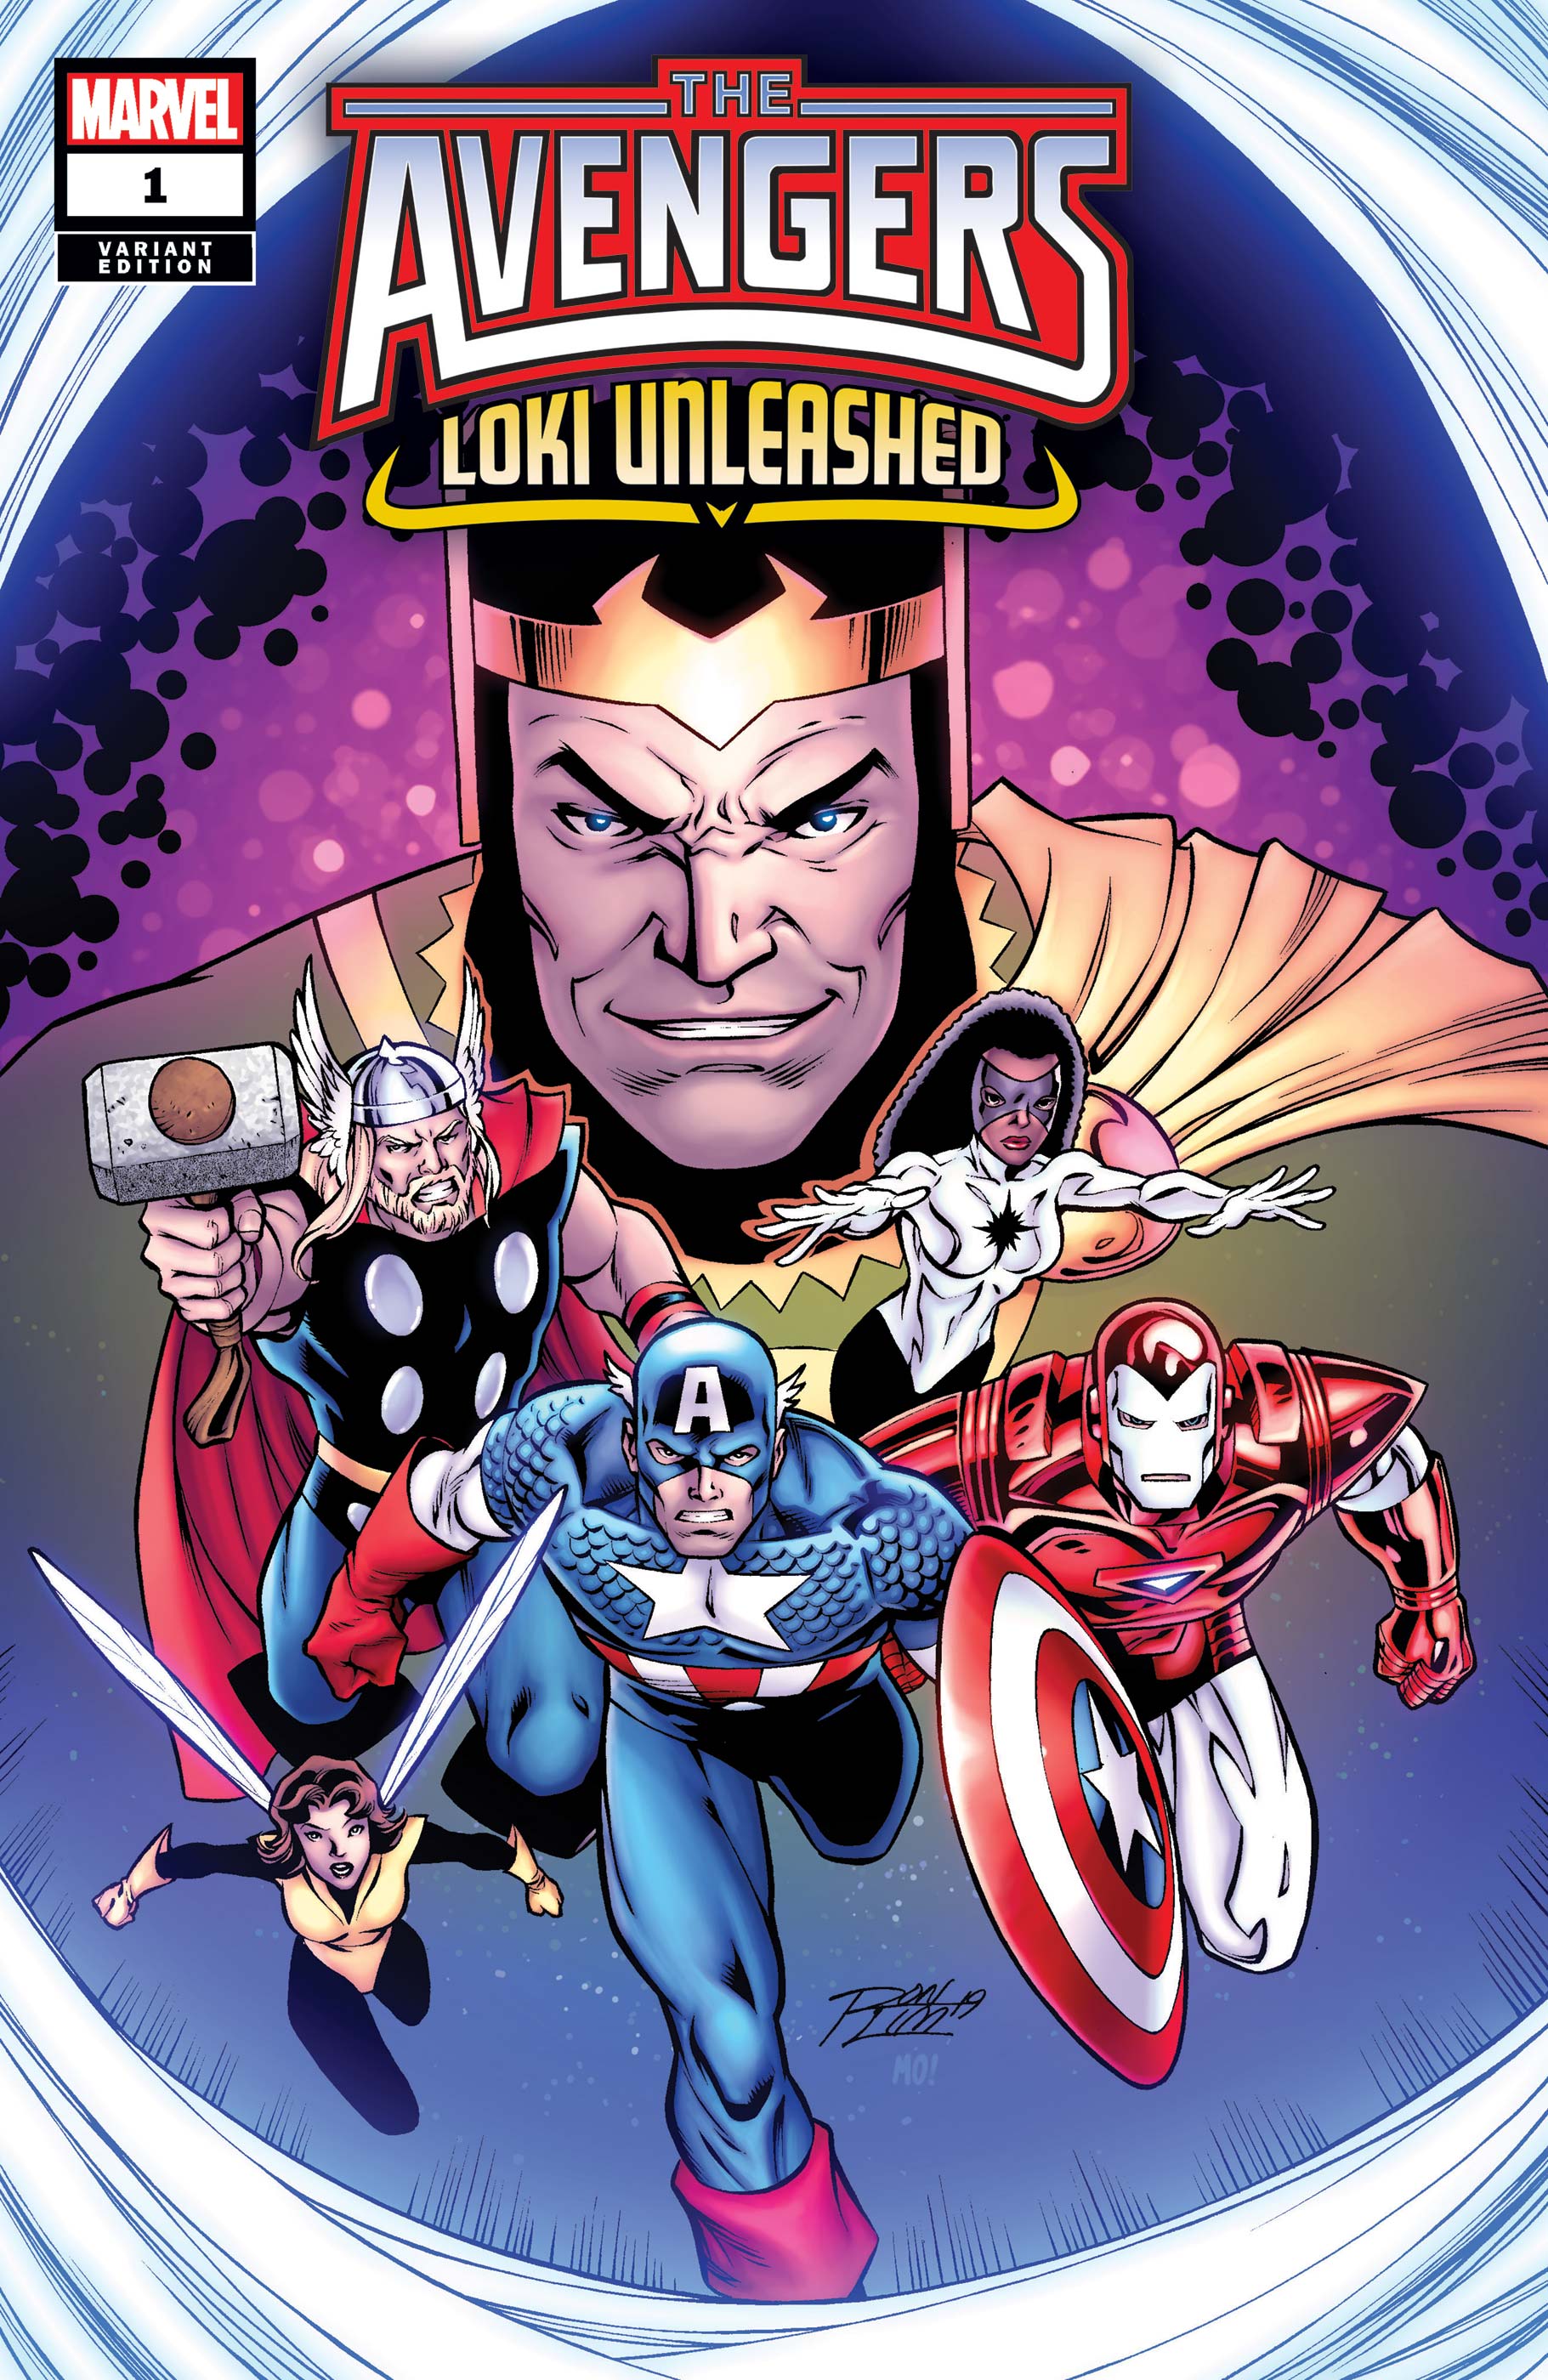 Avengers: Loki Unleashed! (2019) #1 (Variant)